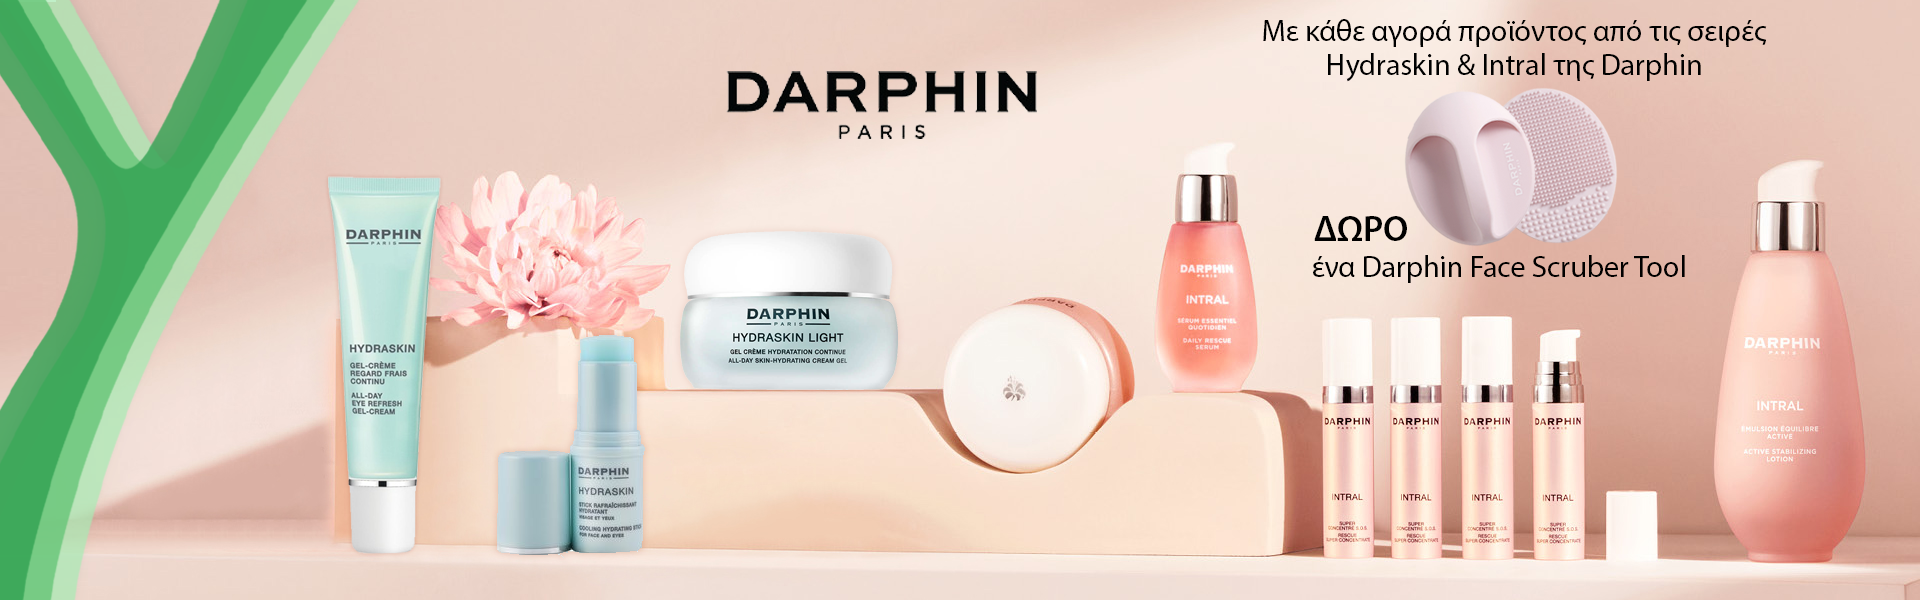 Η Darphin σου χαρίζει ένα Face Scrubber με κάθε αγορά προϊόντων Hydraskin & Intral.